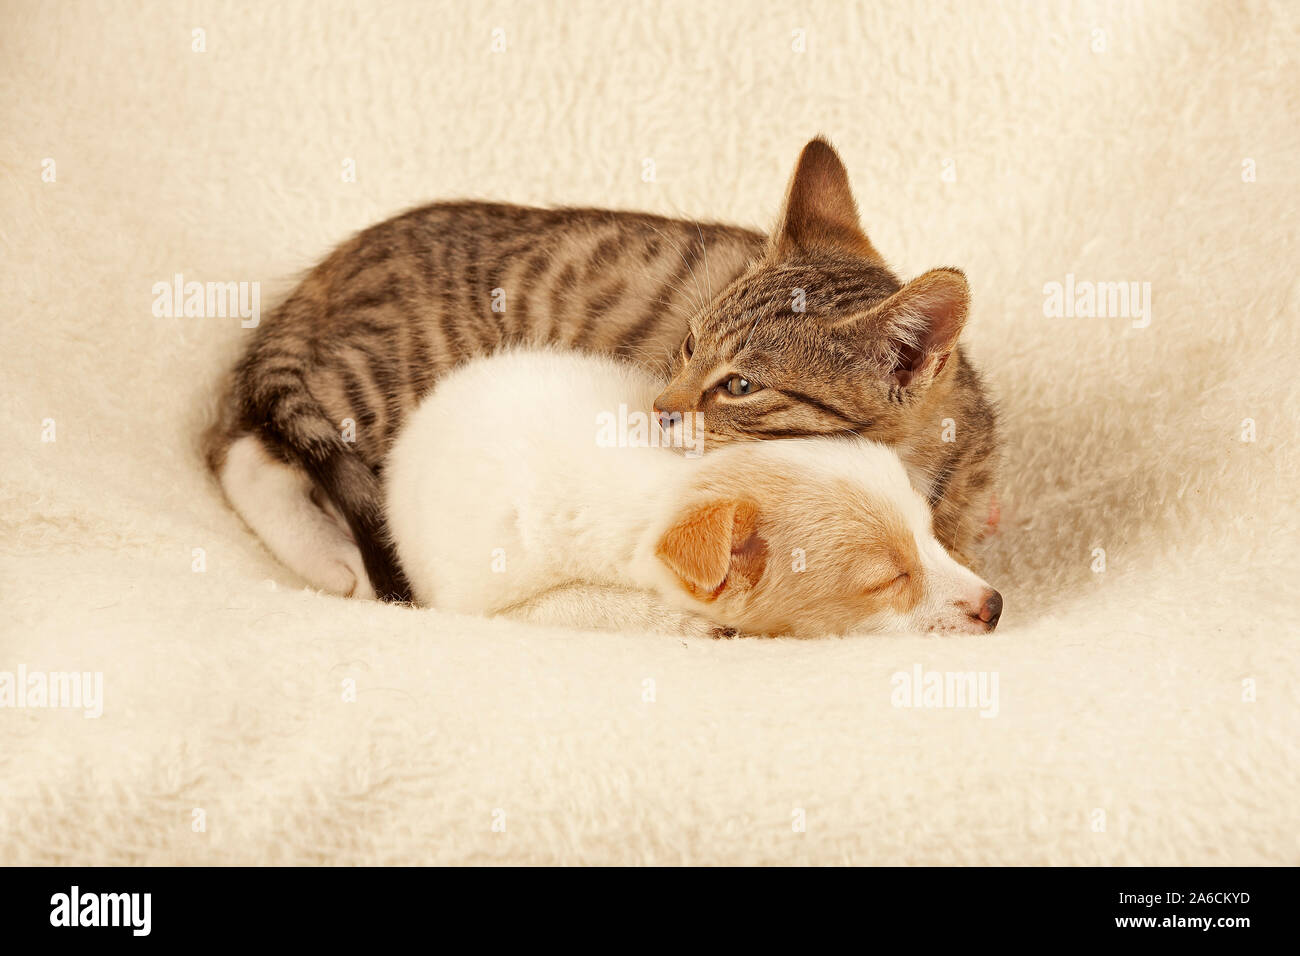 Junges Kätzchen und junger Hund schlafen friedlich nebeneinander | Ritratto di un gattino e un giovane cucciolo pacificamente addormentato accanto a ogni altro. Foto Stock